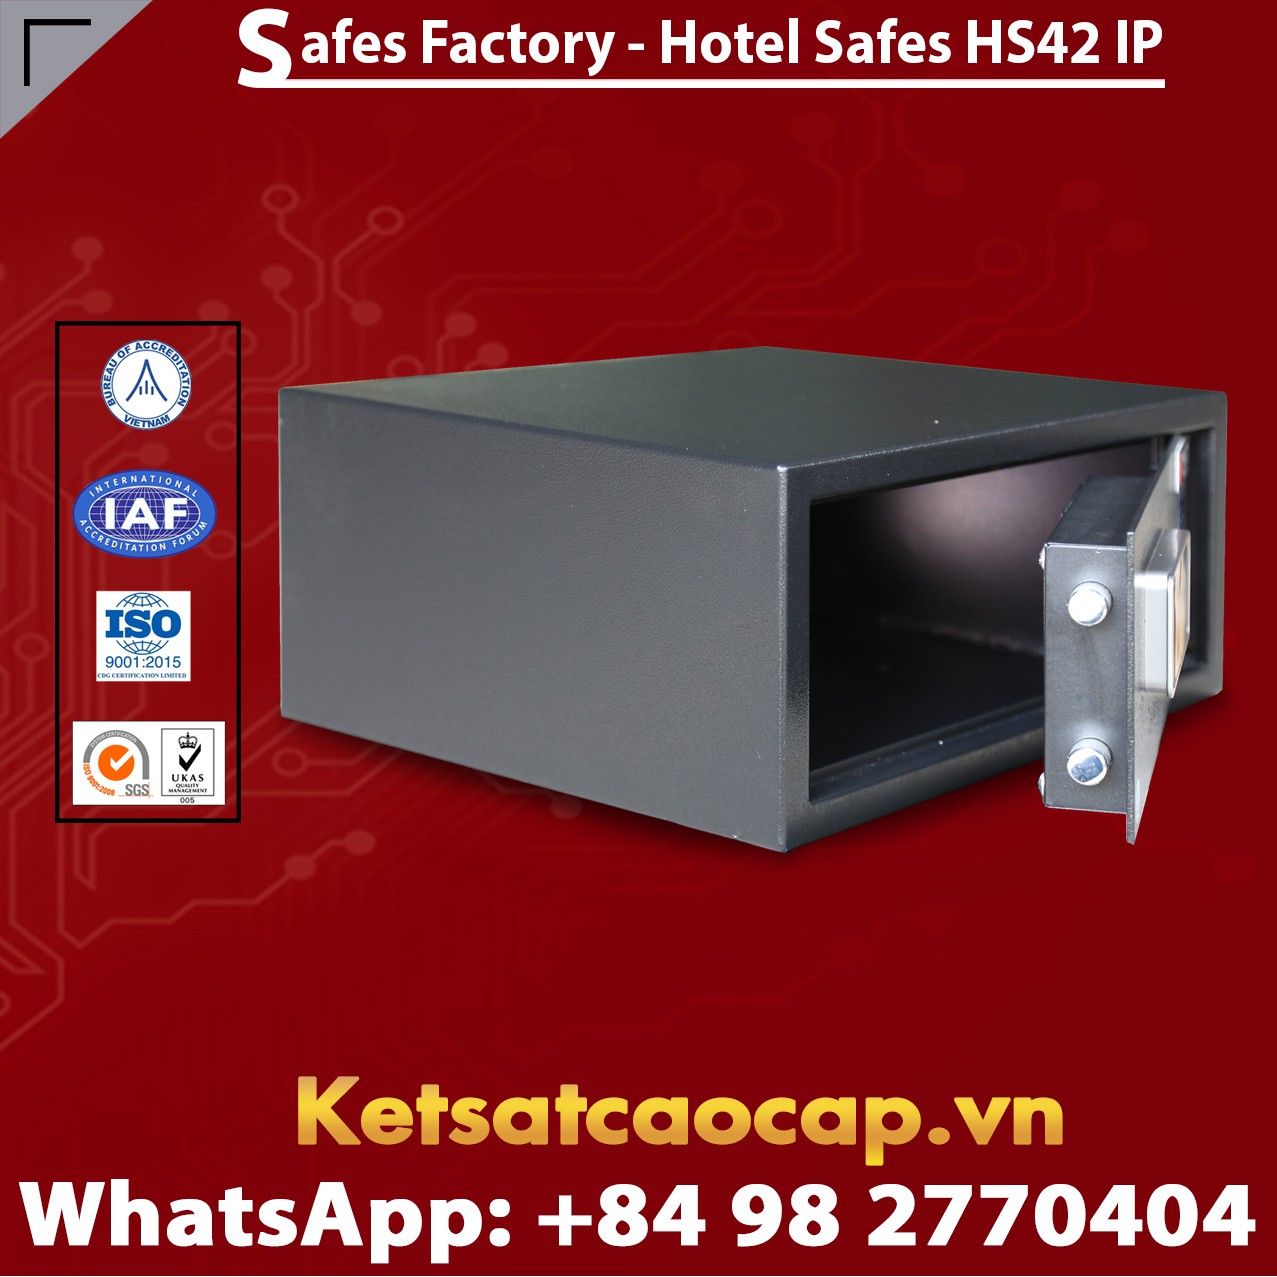 Best Hotel Safe For Home WELKO HS42 IP